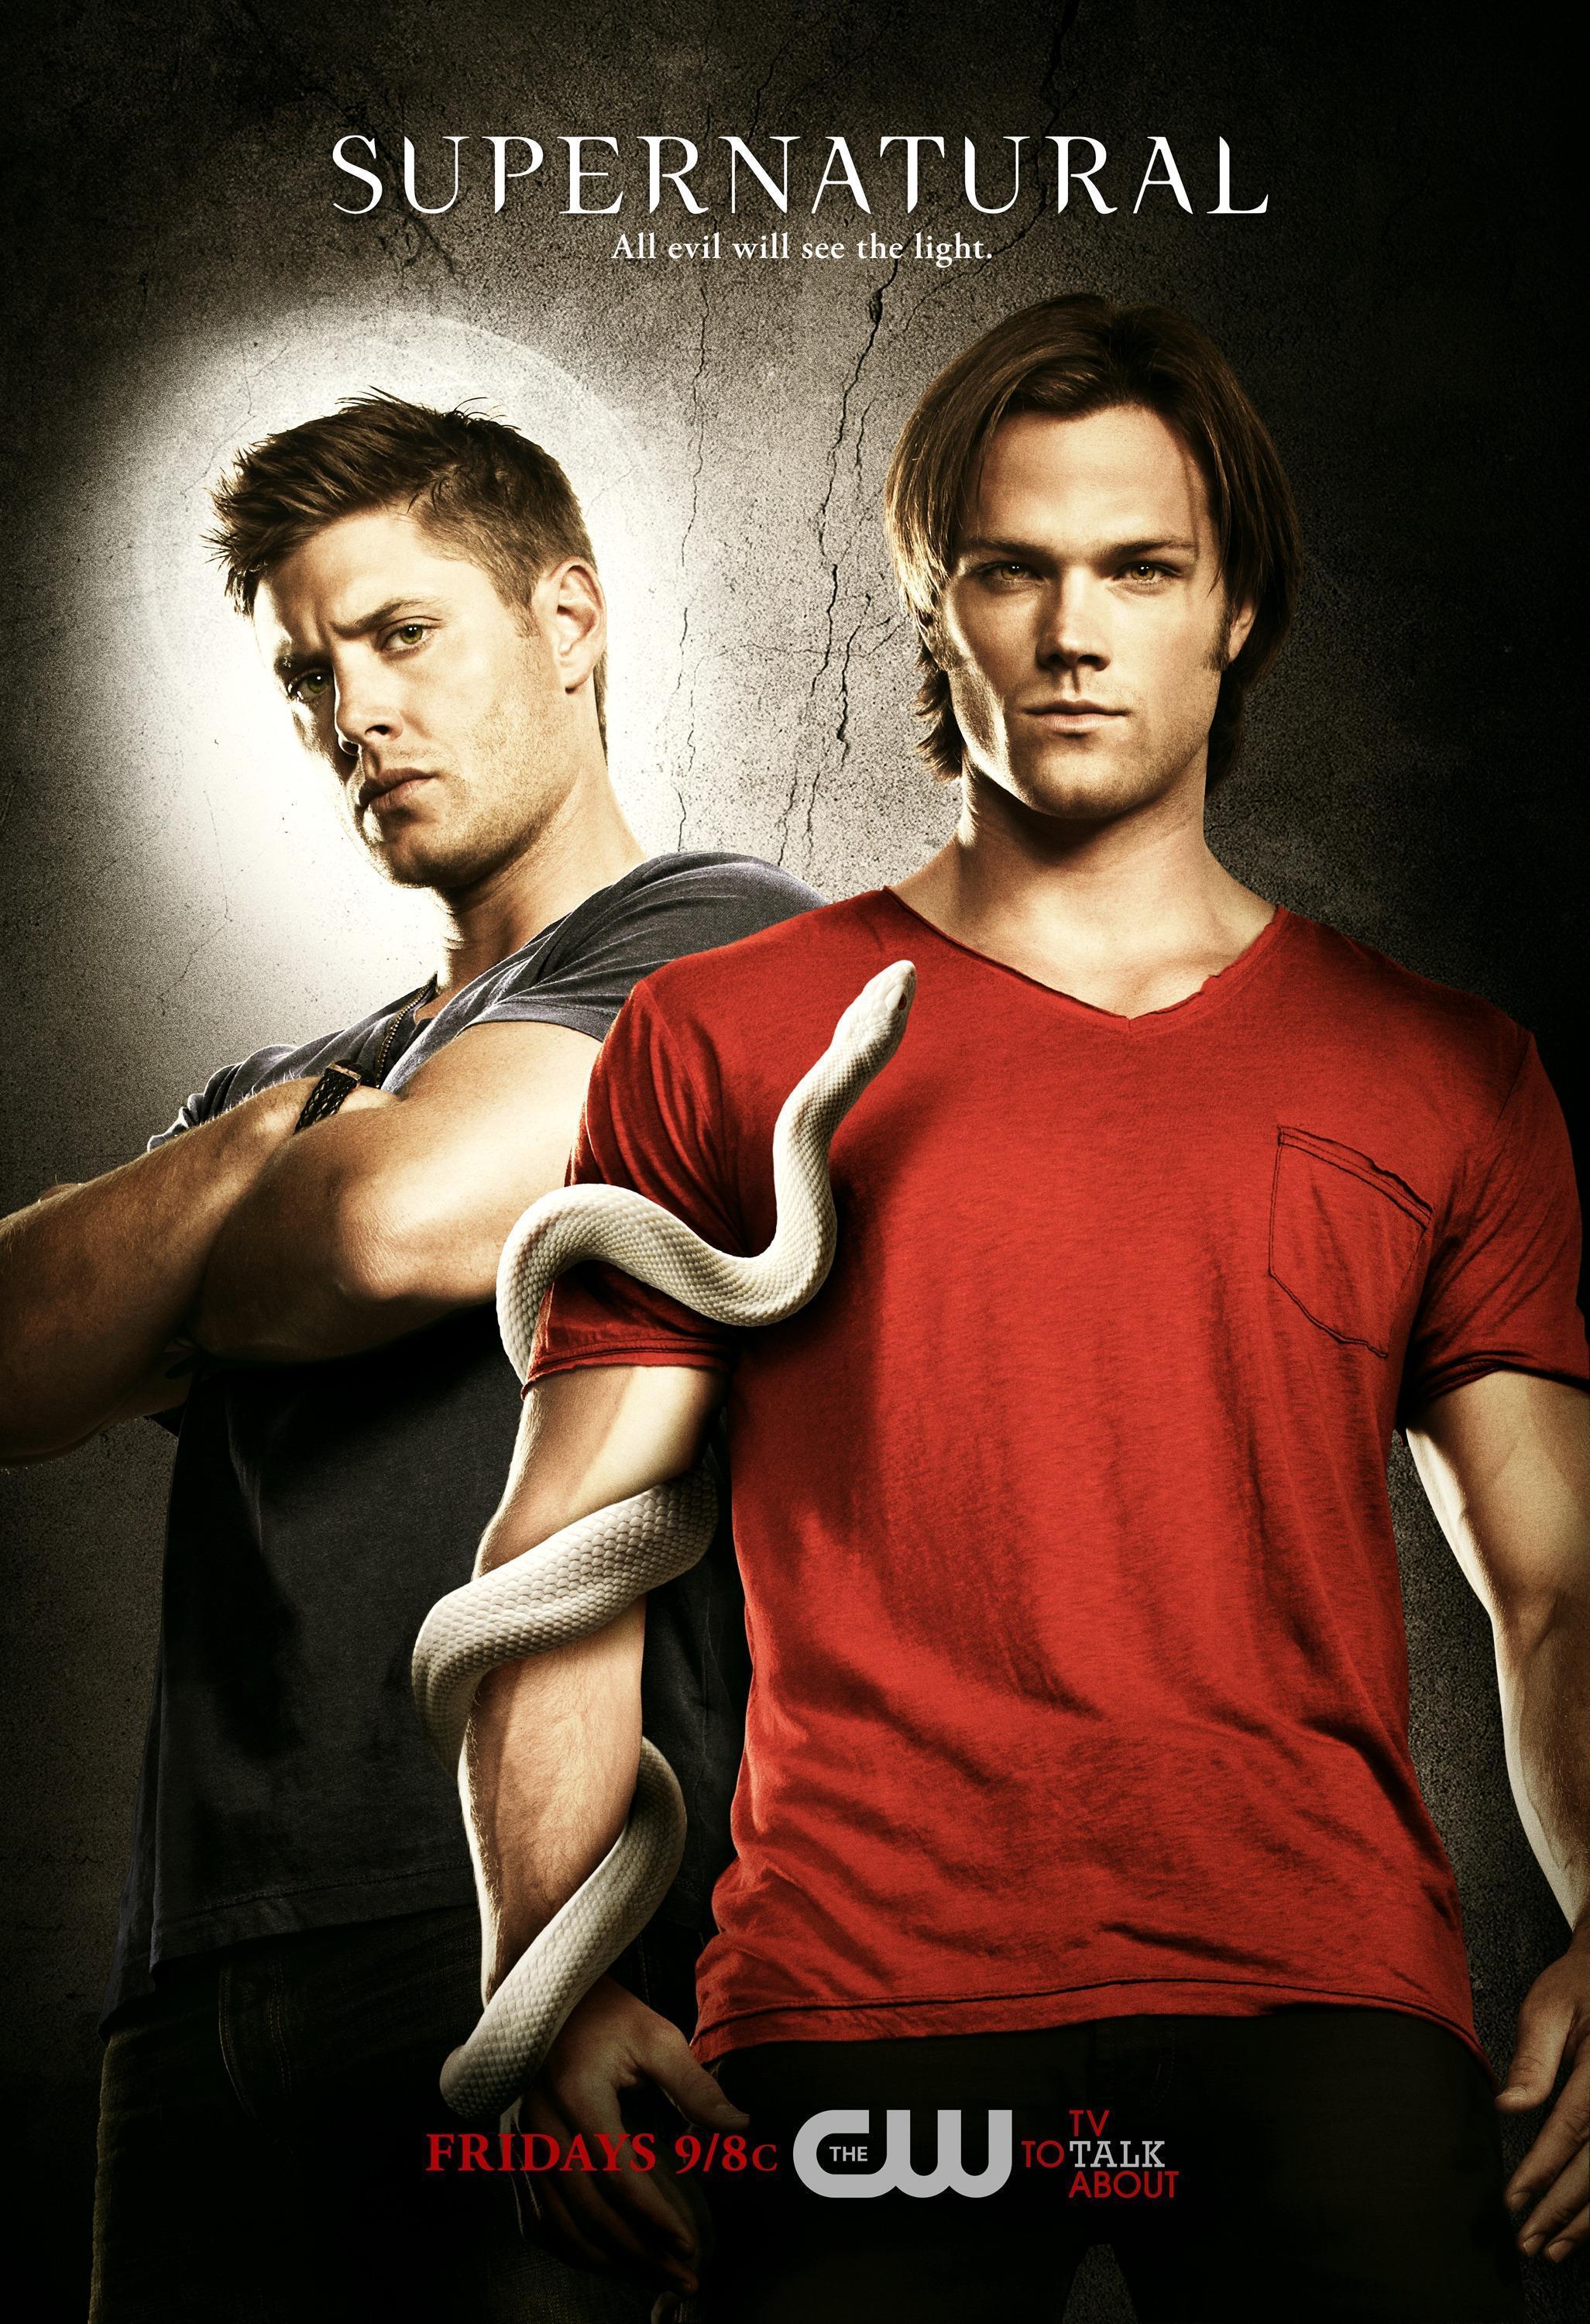 image For > Supernatural Season 6 Wallpaper